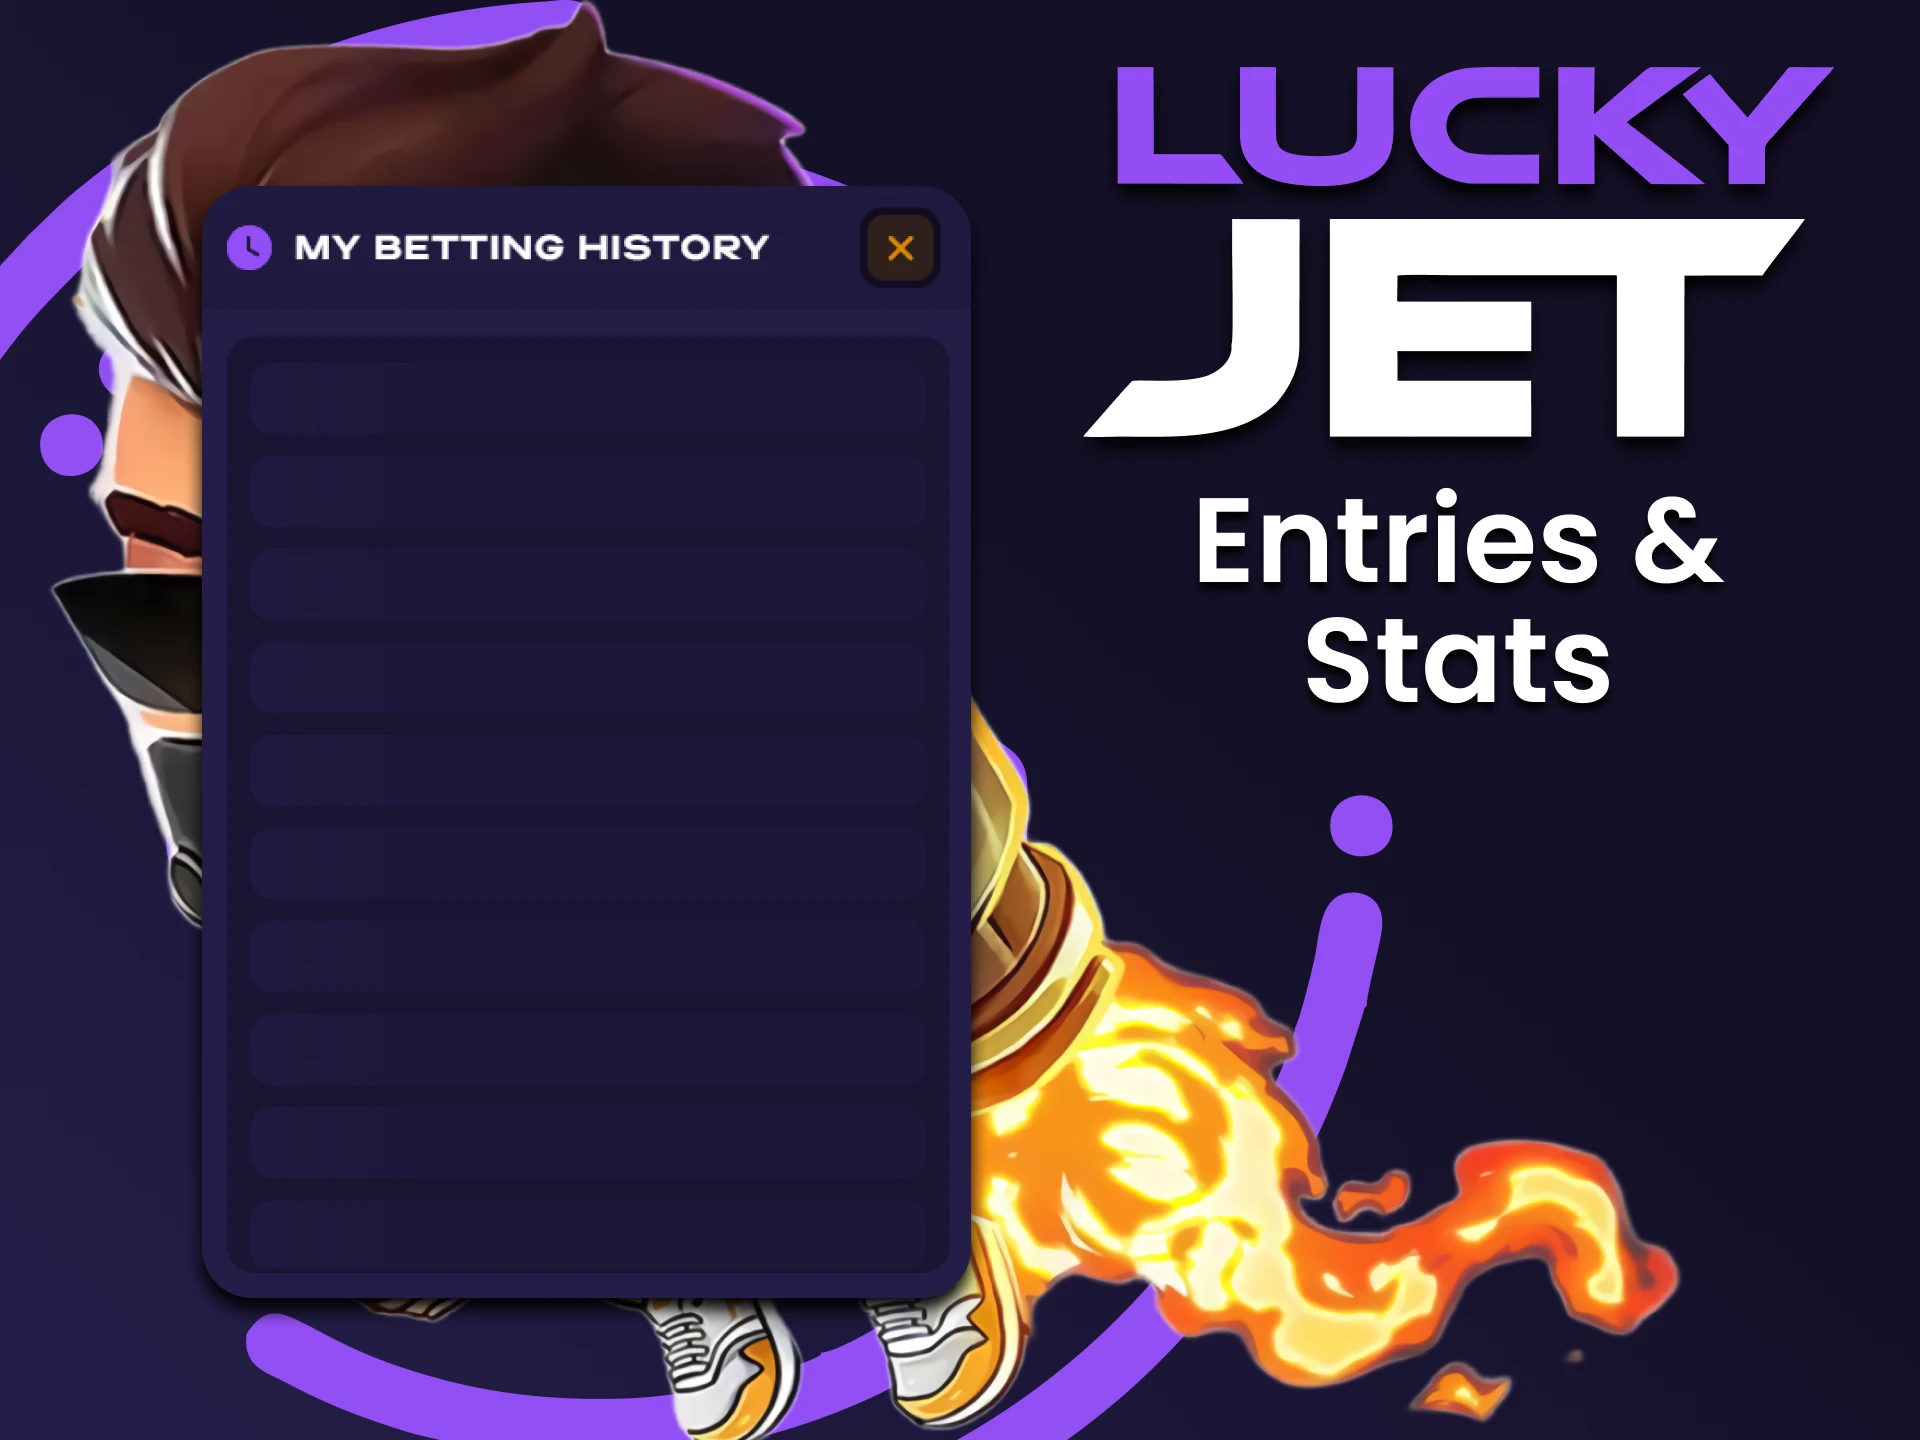 Controla tus estadísticas de juego y toma las decisiones correctas cuando juegues en Lucky Jet.